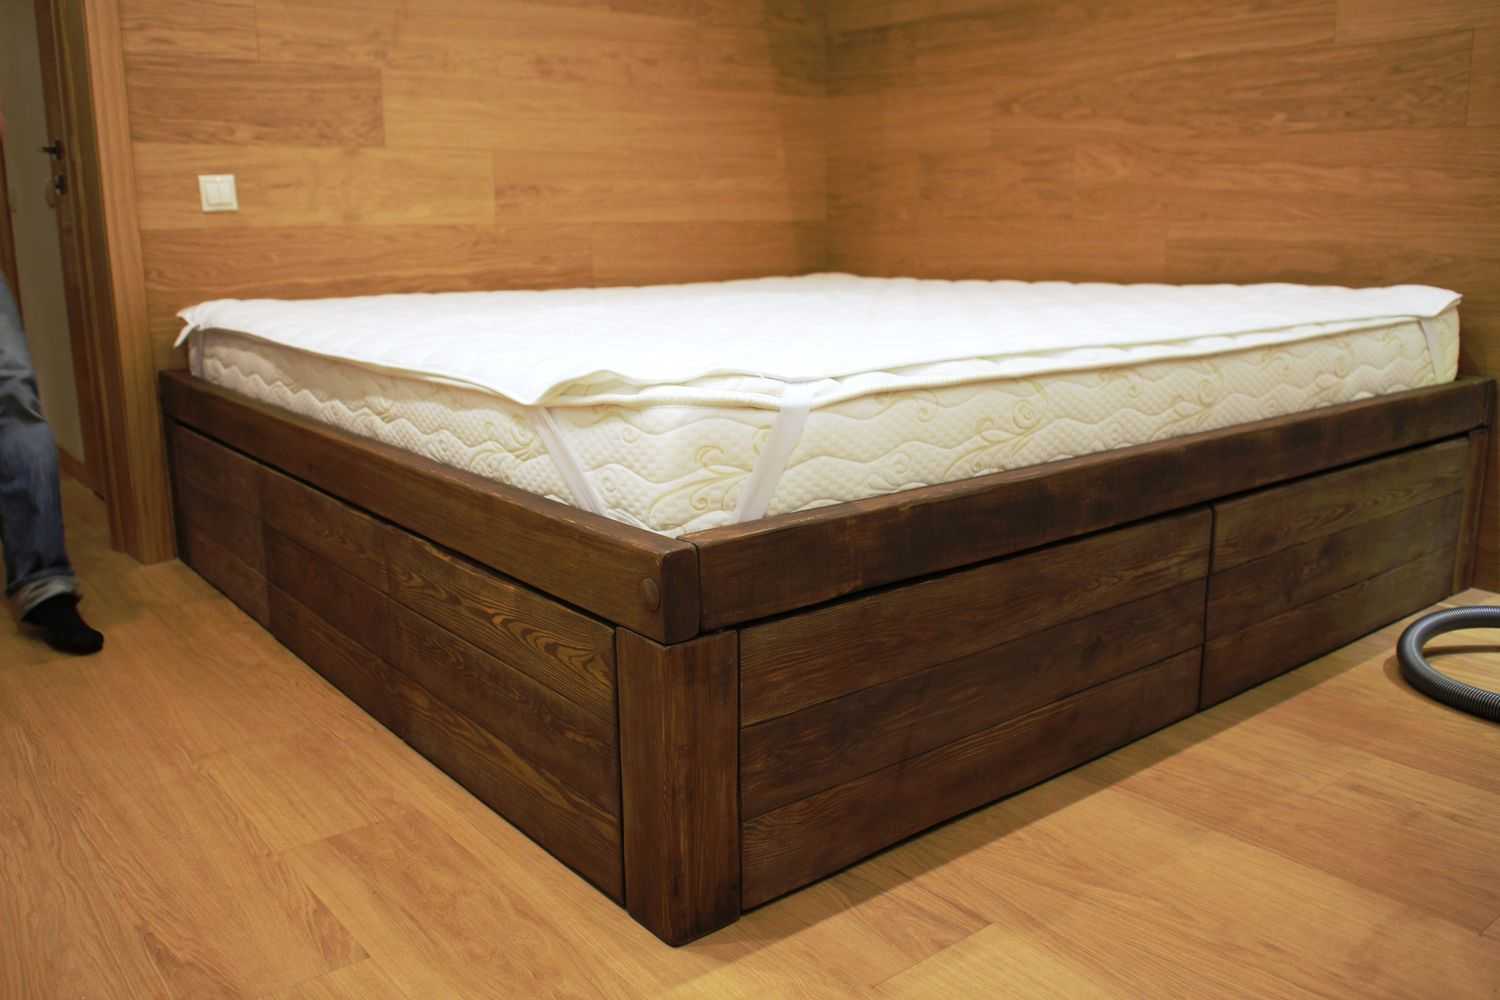 Кровать из дерева своими руками (74 фото): как сделать деревянную двуспальную кровать из бруса, двухъярусная модель, из досок или из бревен, идеи – ремонт своими руками на m-stone.ru